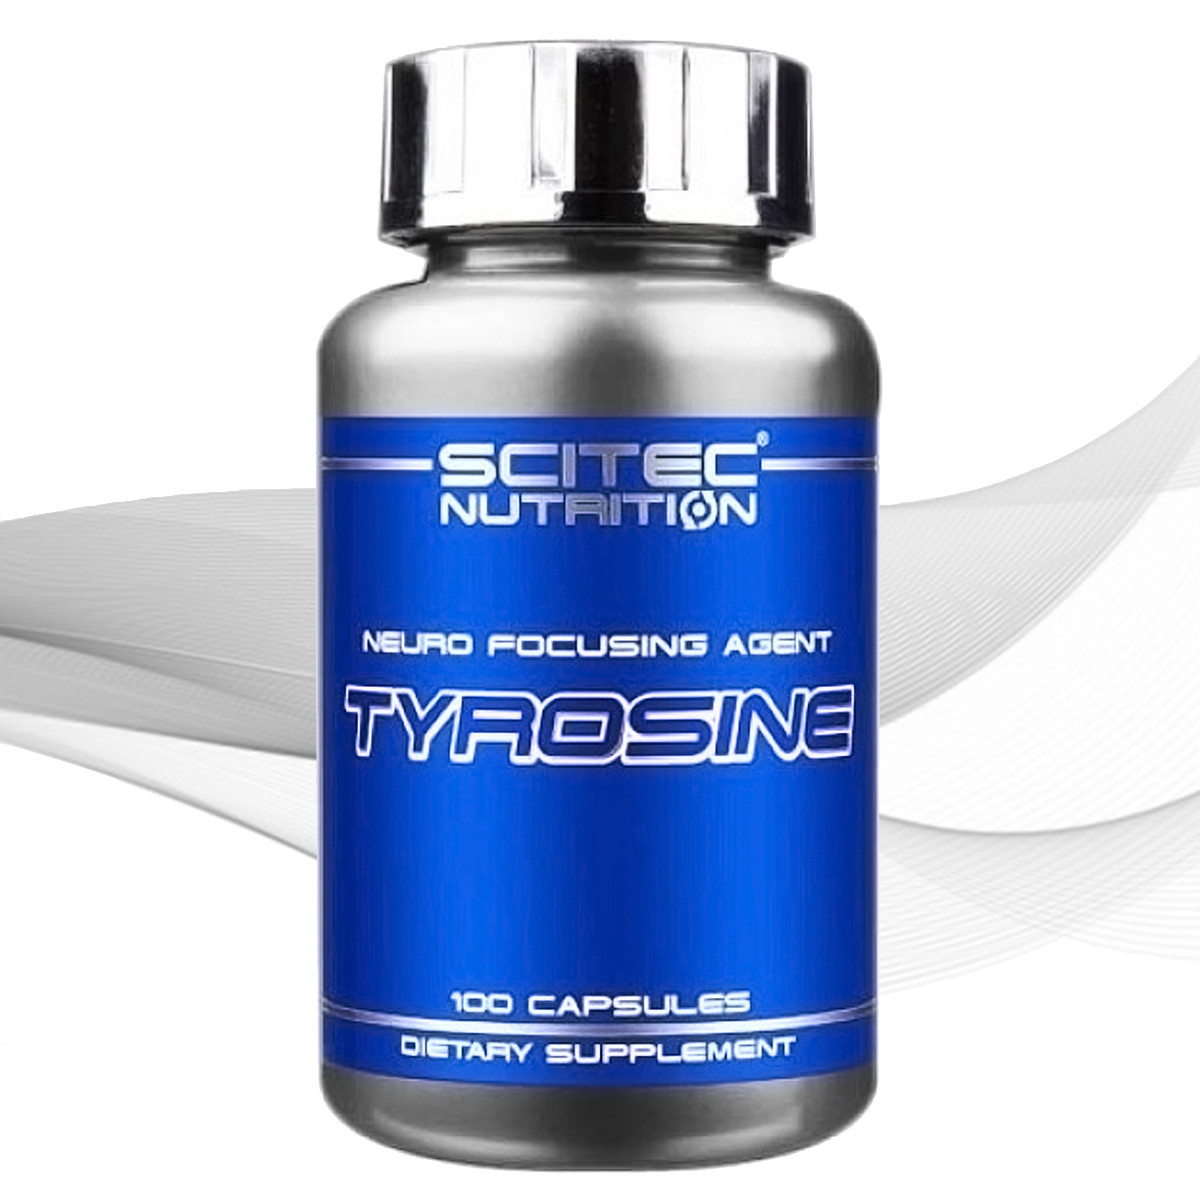 Л тирозин Scitec Nutrition Tyrosine 100 caps.